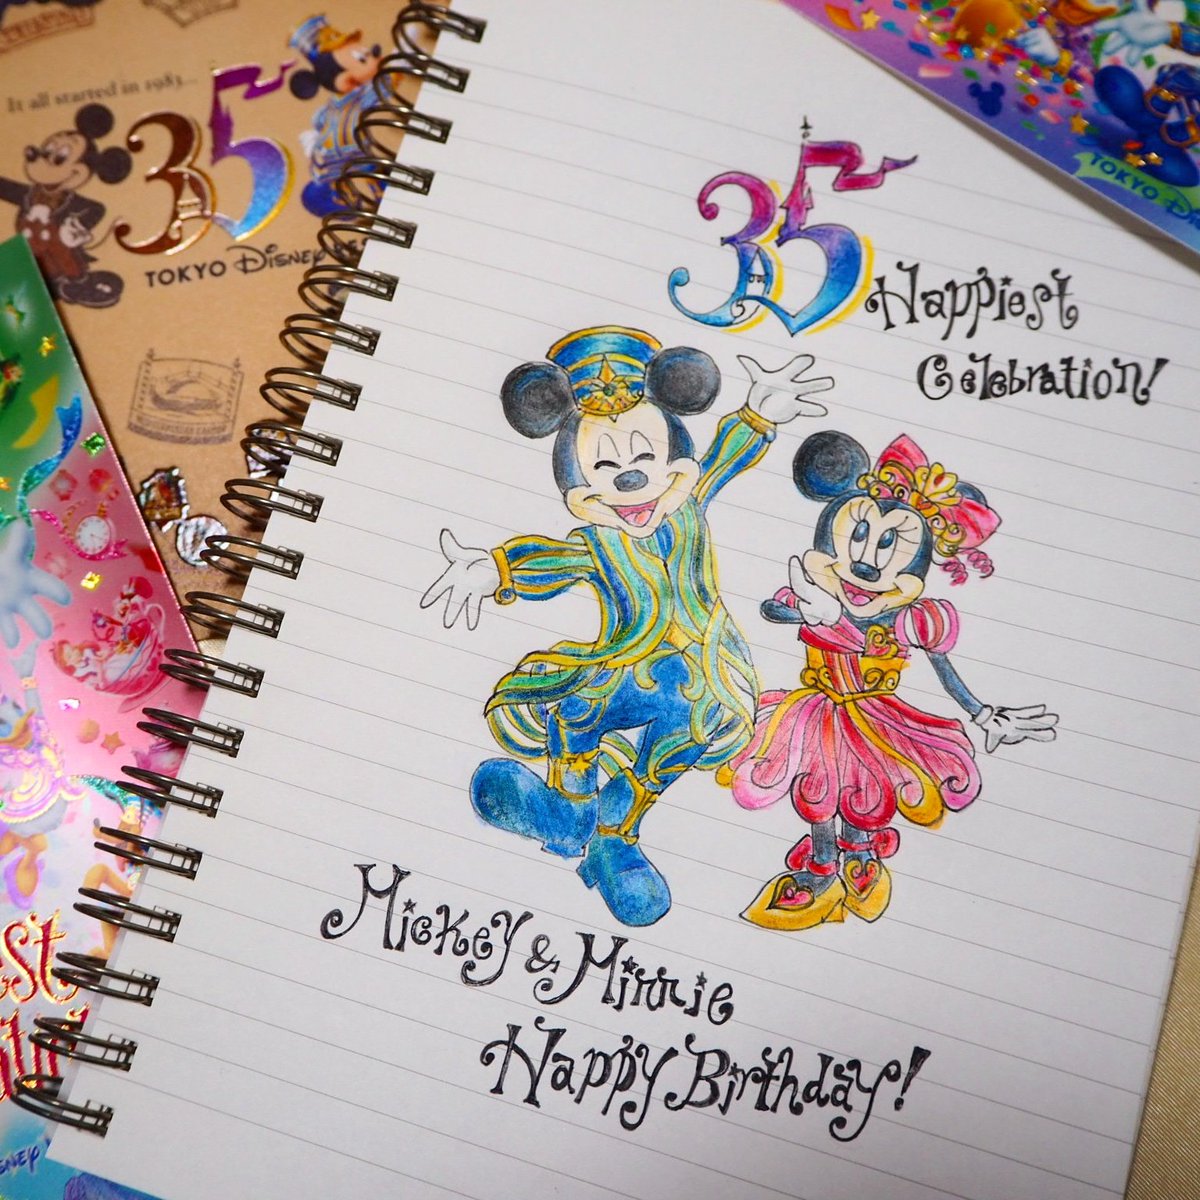 森麻美 Asamimori ミッキー ミニー ハッピーバースデー 11月18日はお誕生日 おめでとう 記念にイラスト描きました ミッキーマウス誕生日 ミニーハッピーバースデー 誕生日 イラスト ディズニー T Co Cutisl4c6a Twitter